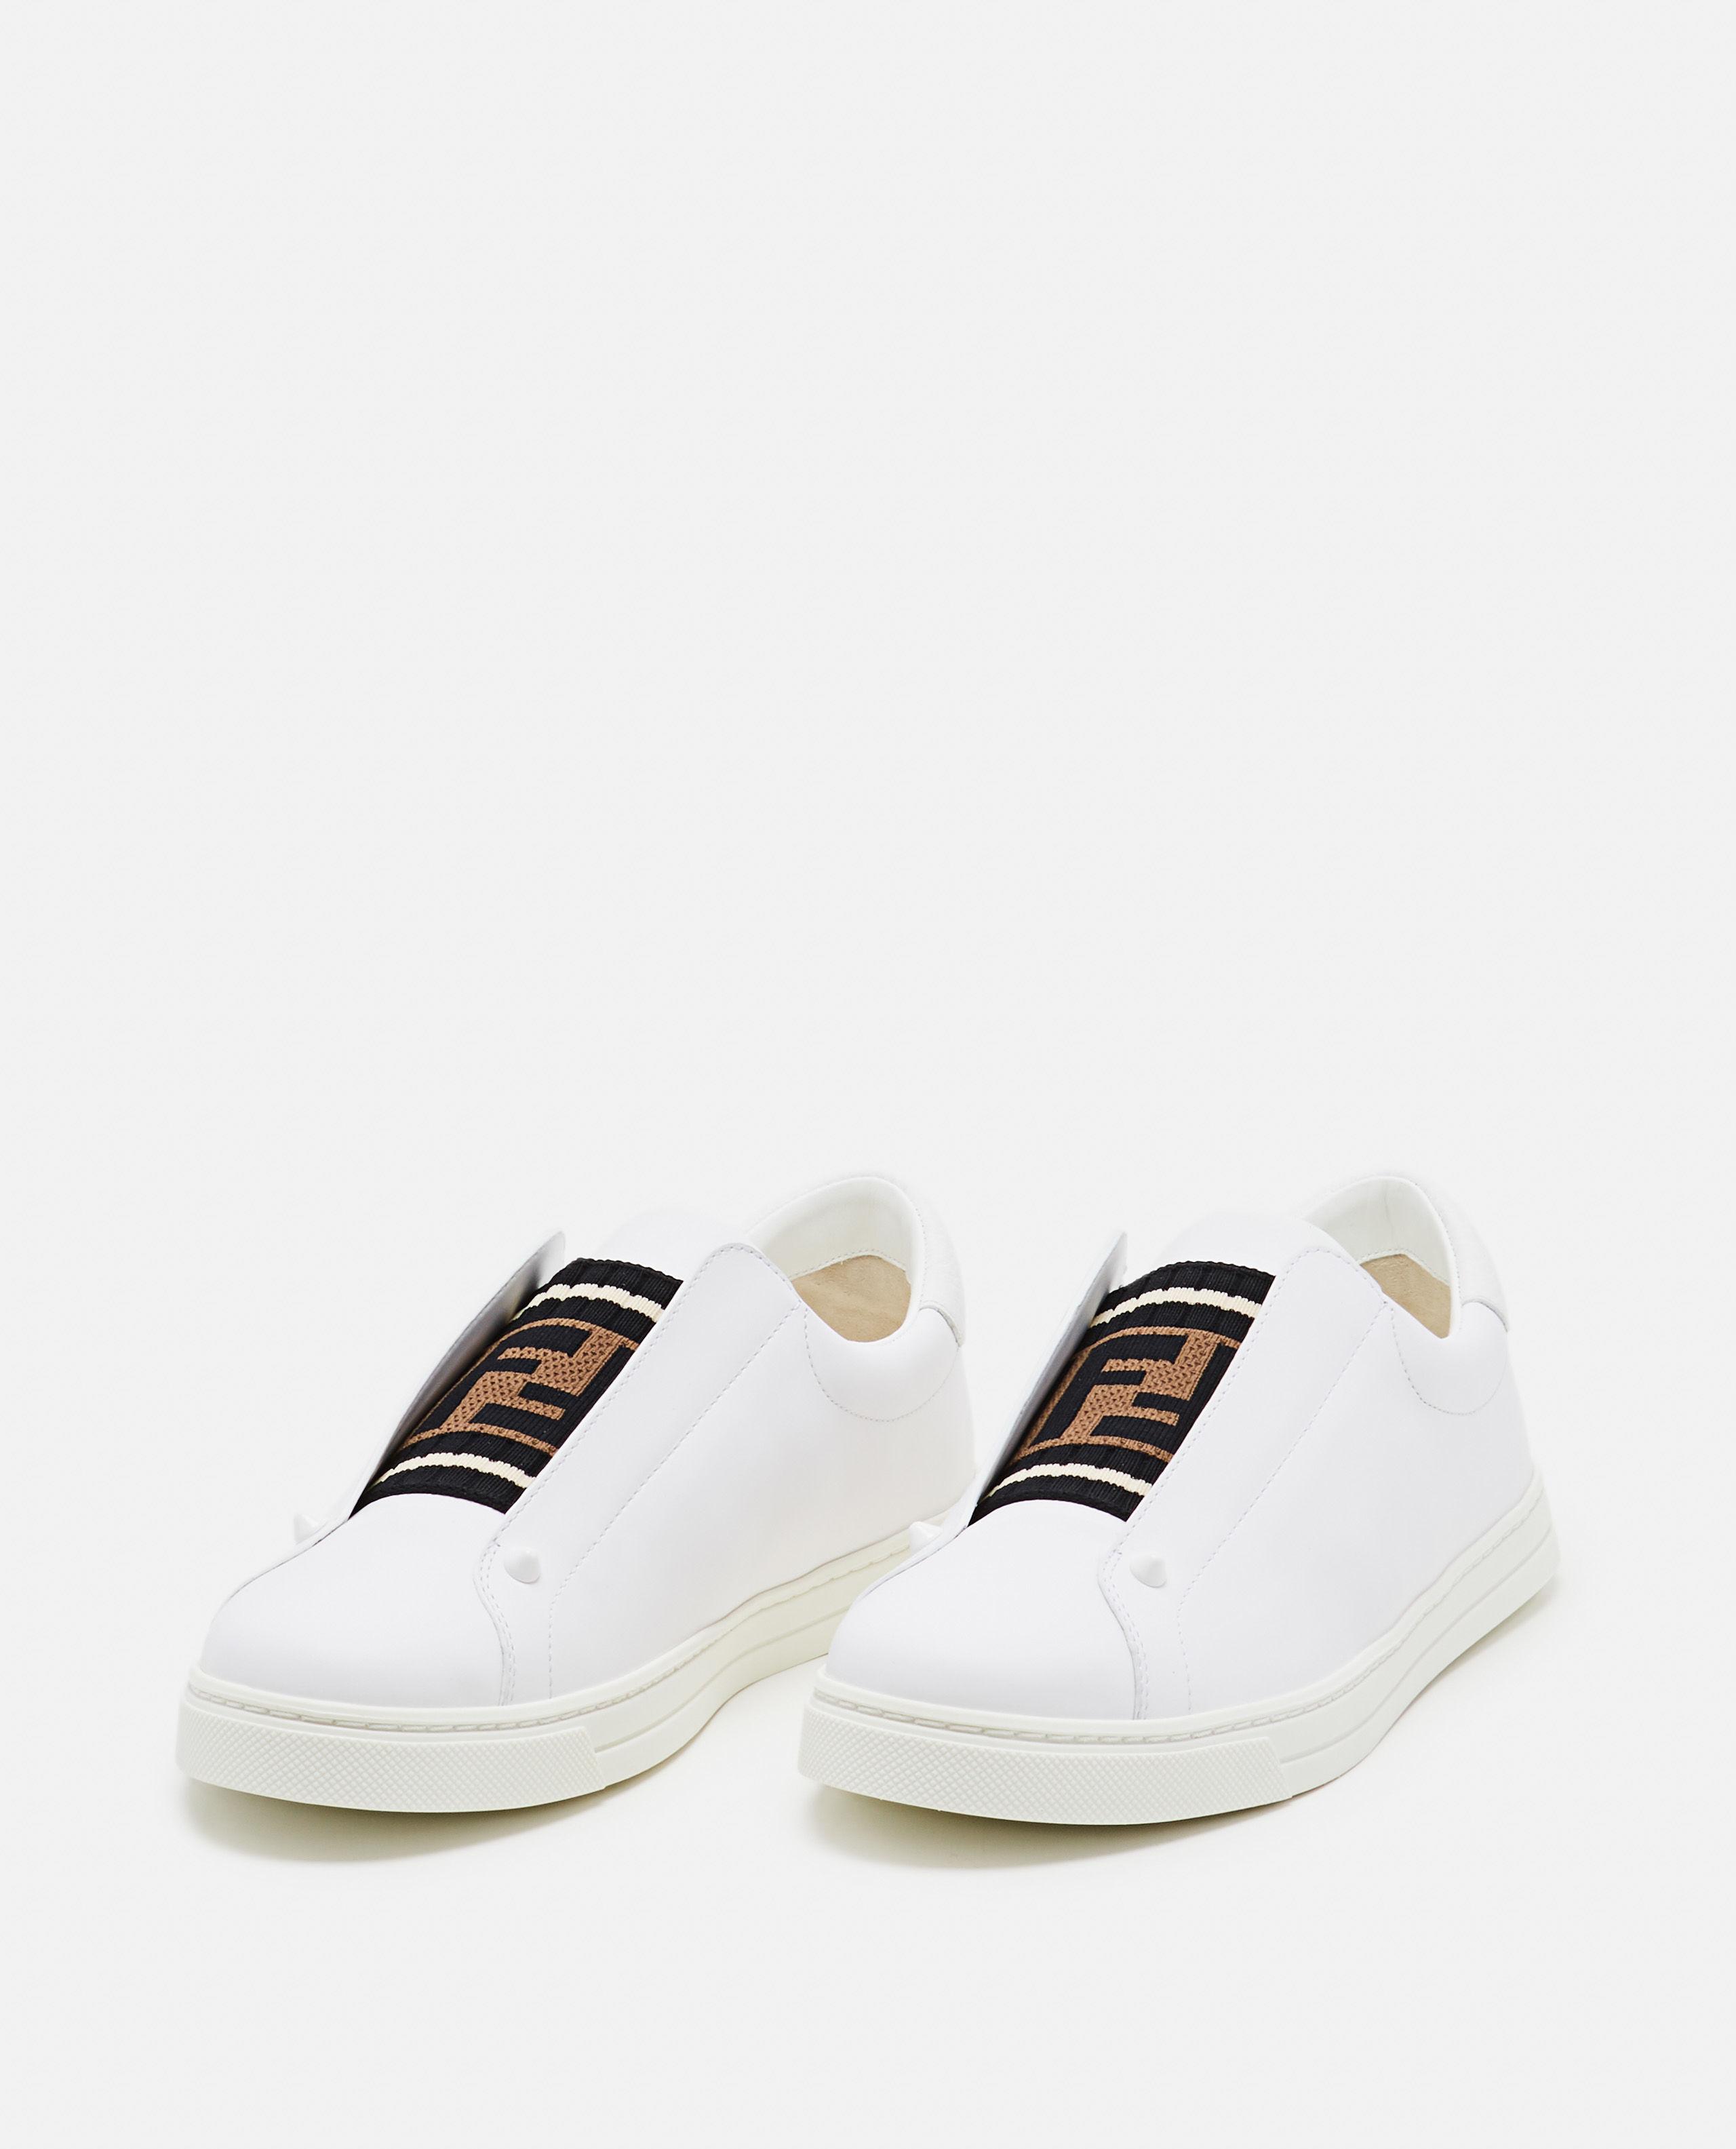 Fendi Leather Sneaker Slip On in White 